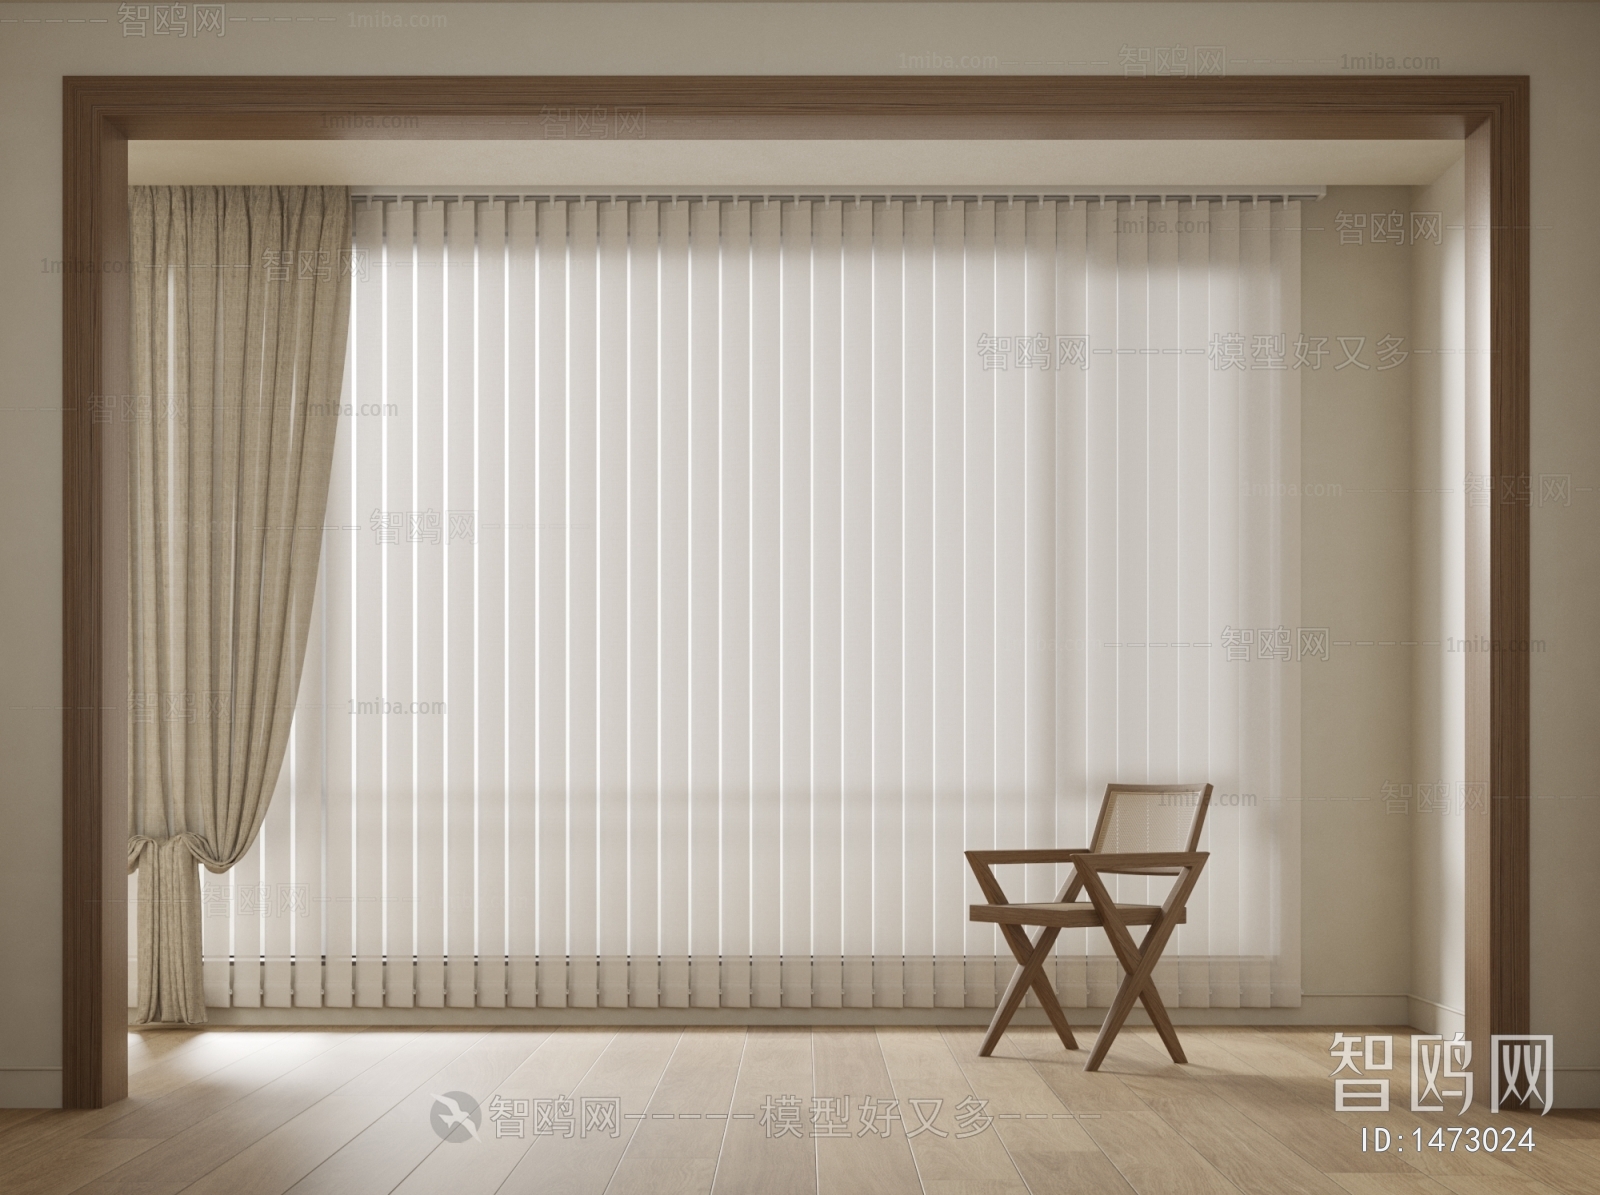 客厅卷帘窗帘效果图图片展示_客厅卷帘窗帘效果图图片下载